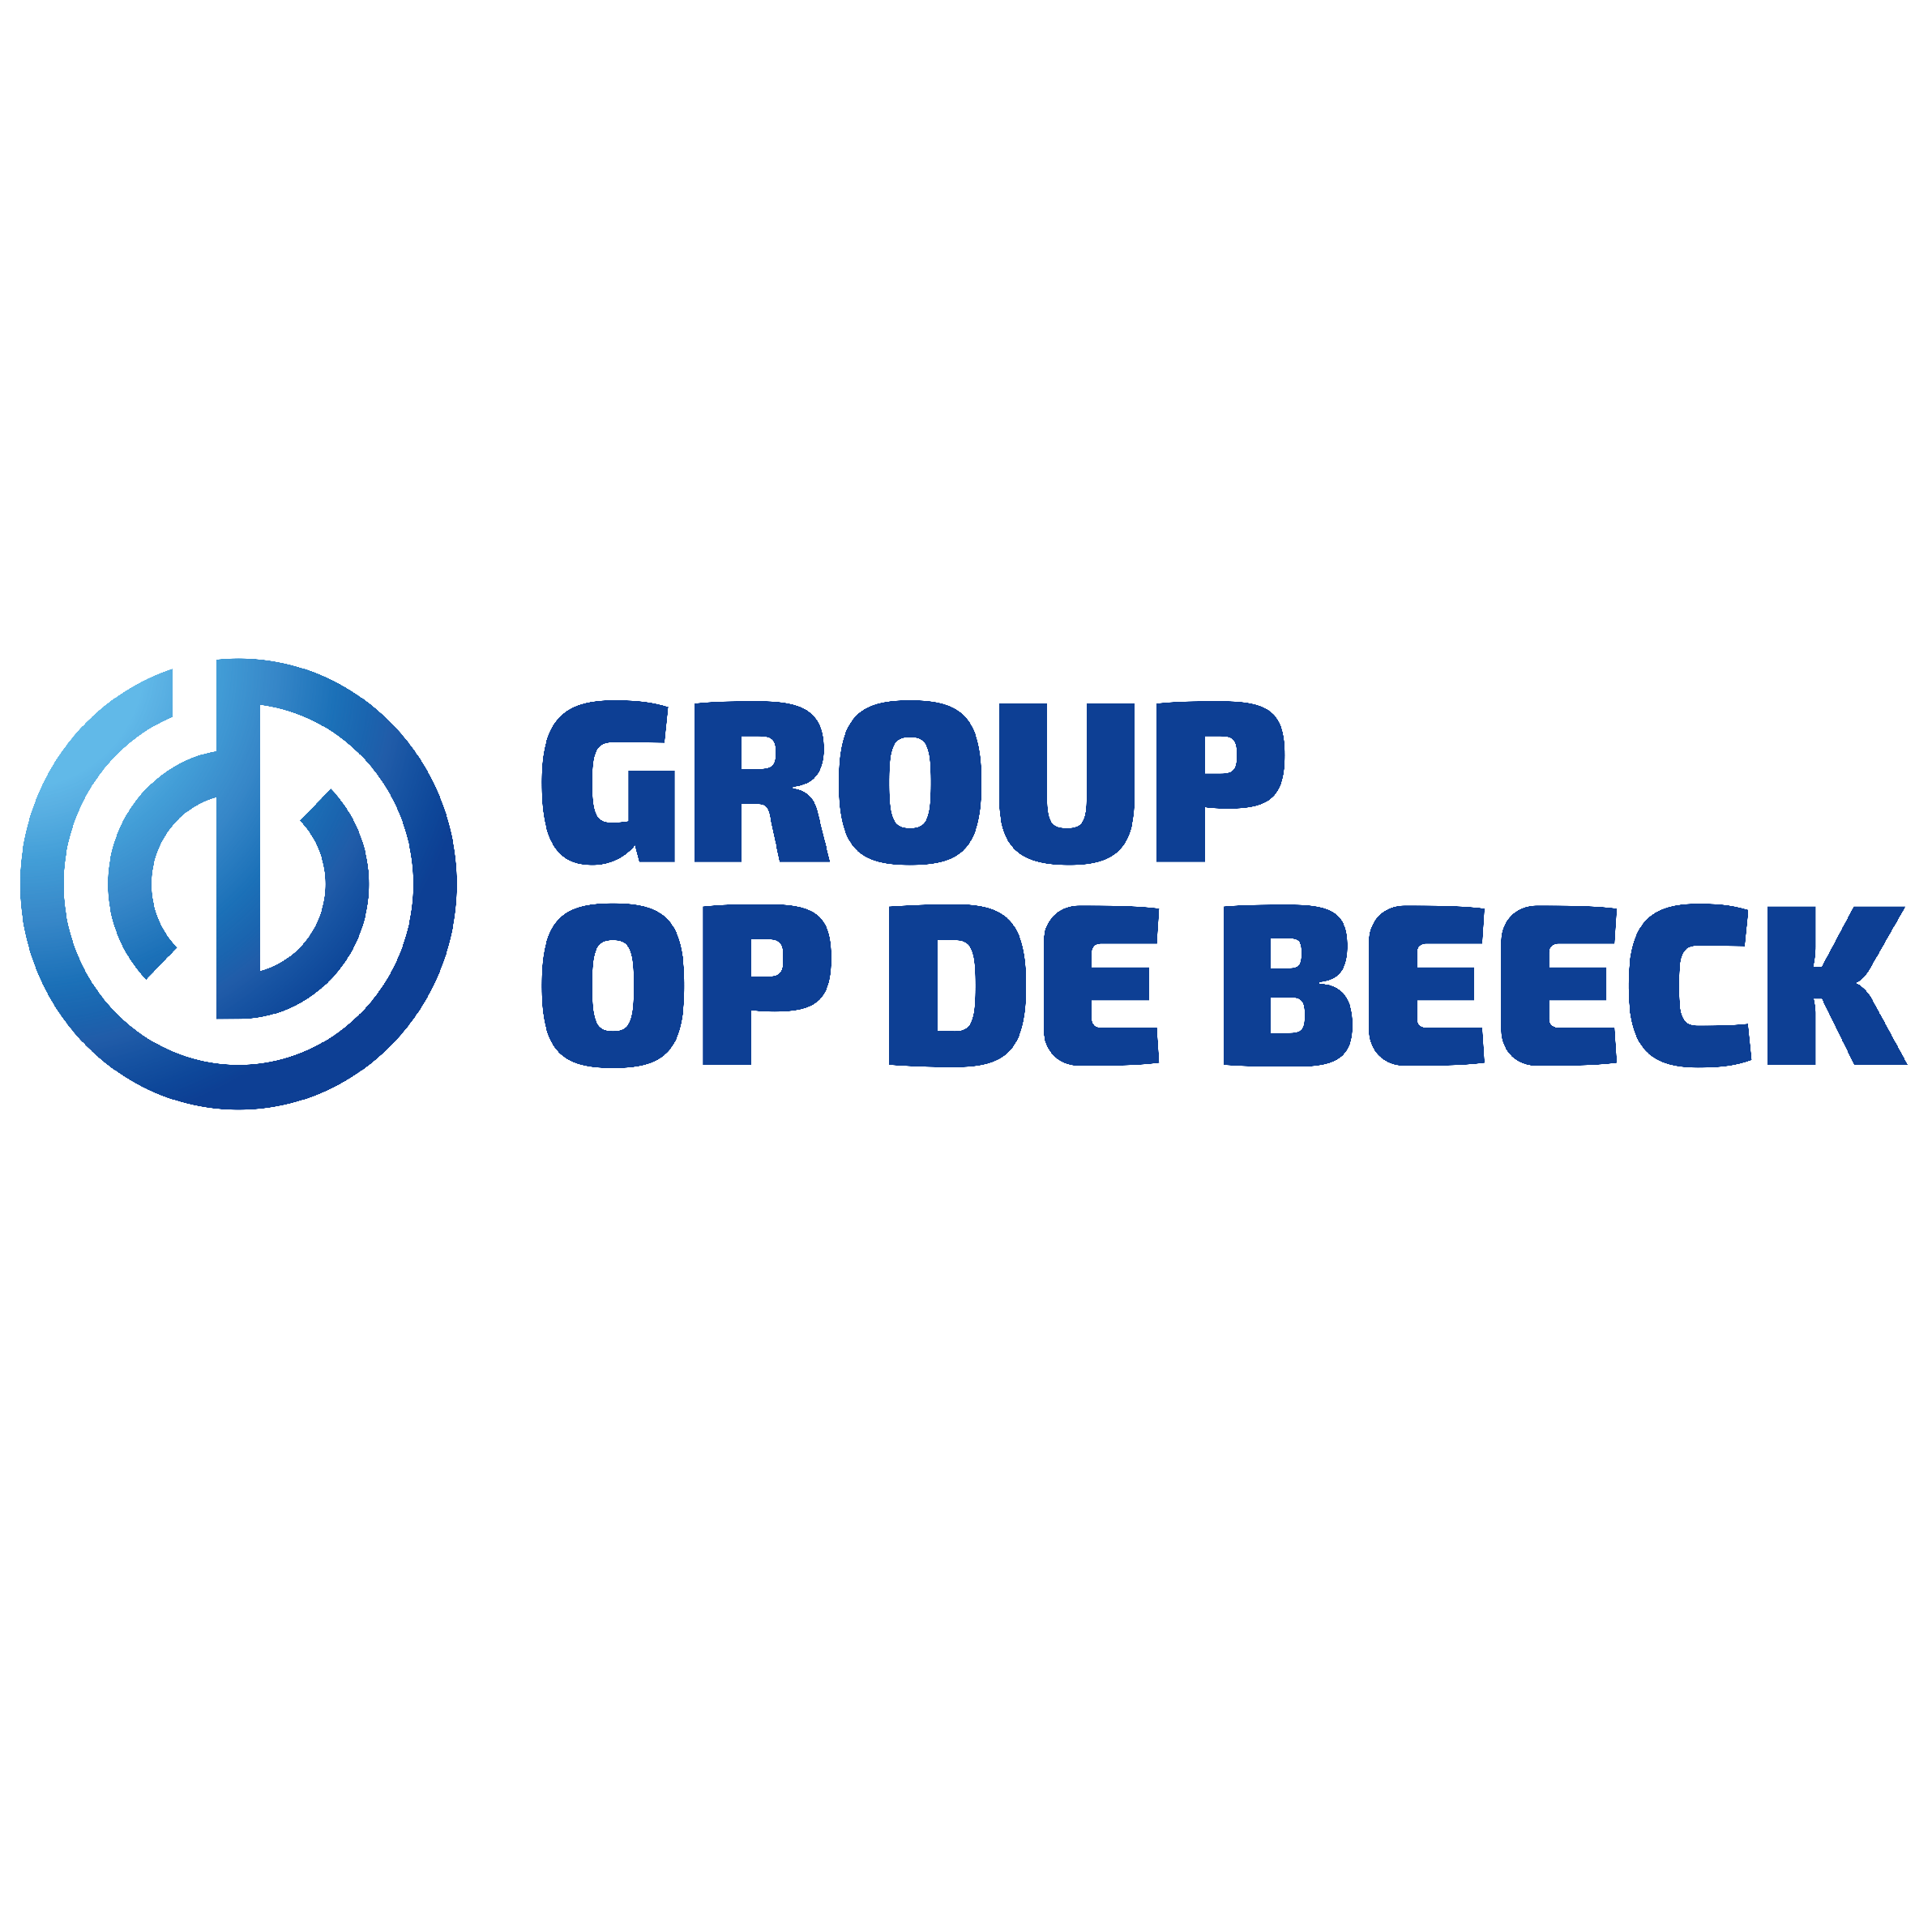 LOGO Groep Op De Beeck (002)